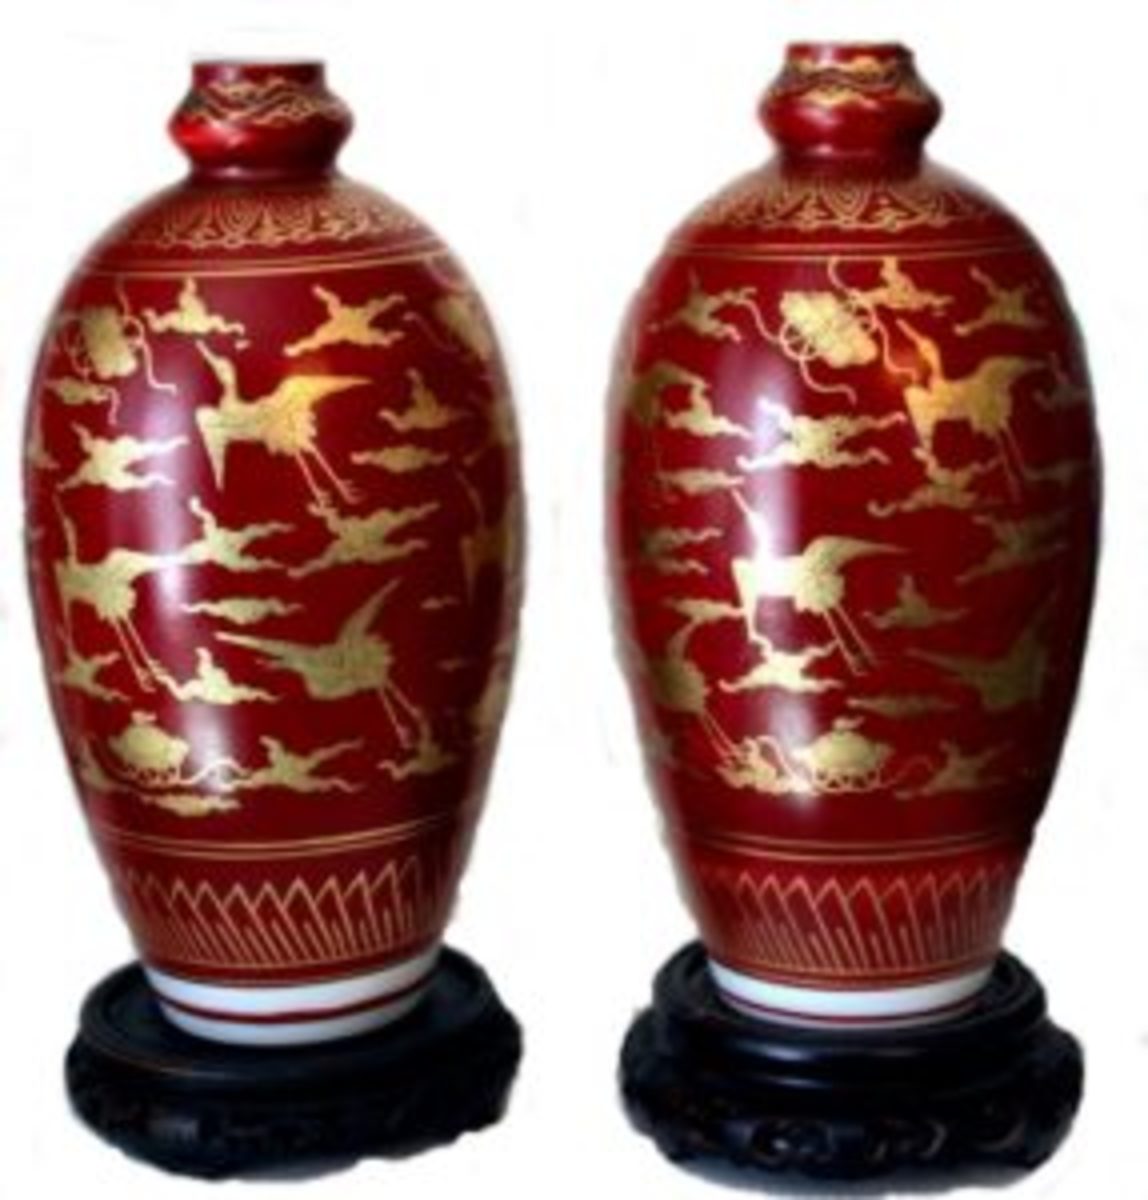 Kinrande style Saiko Kutani ware vases